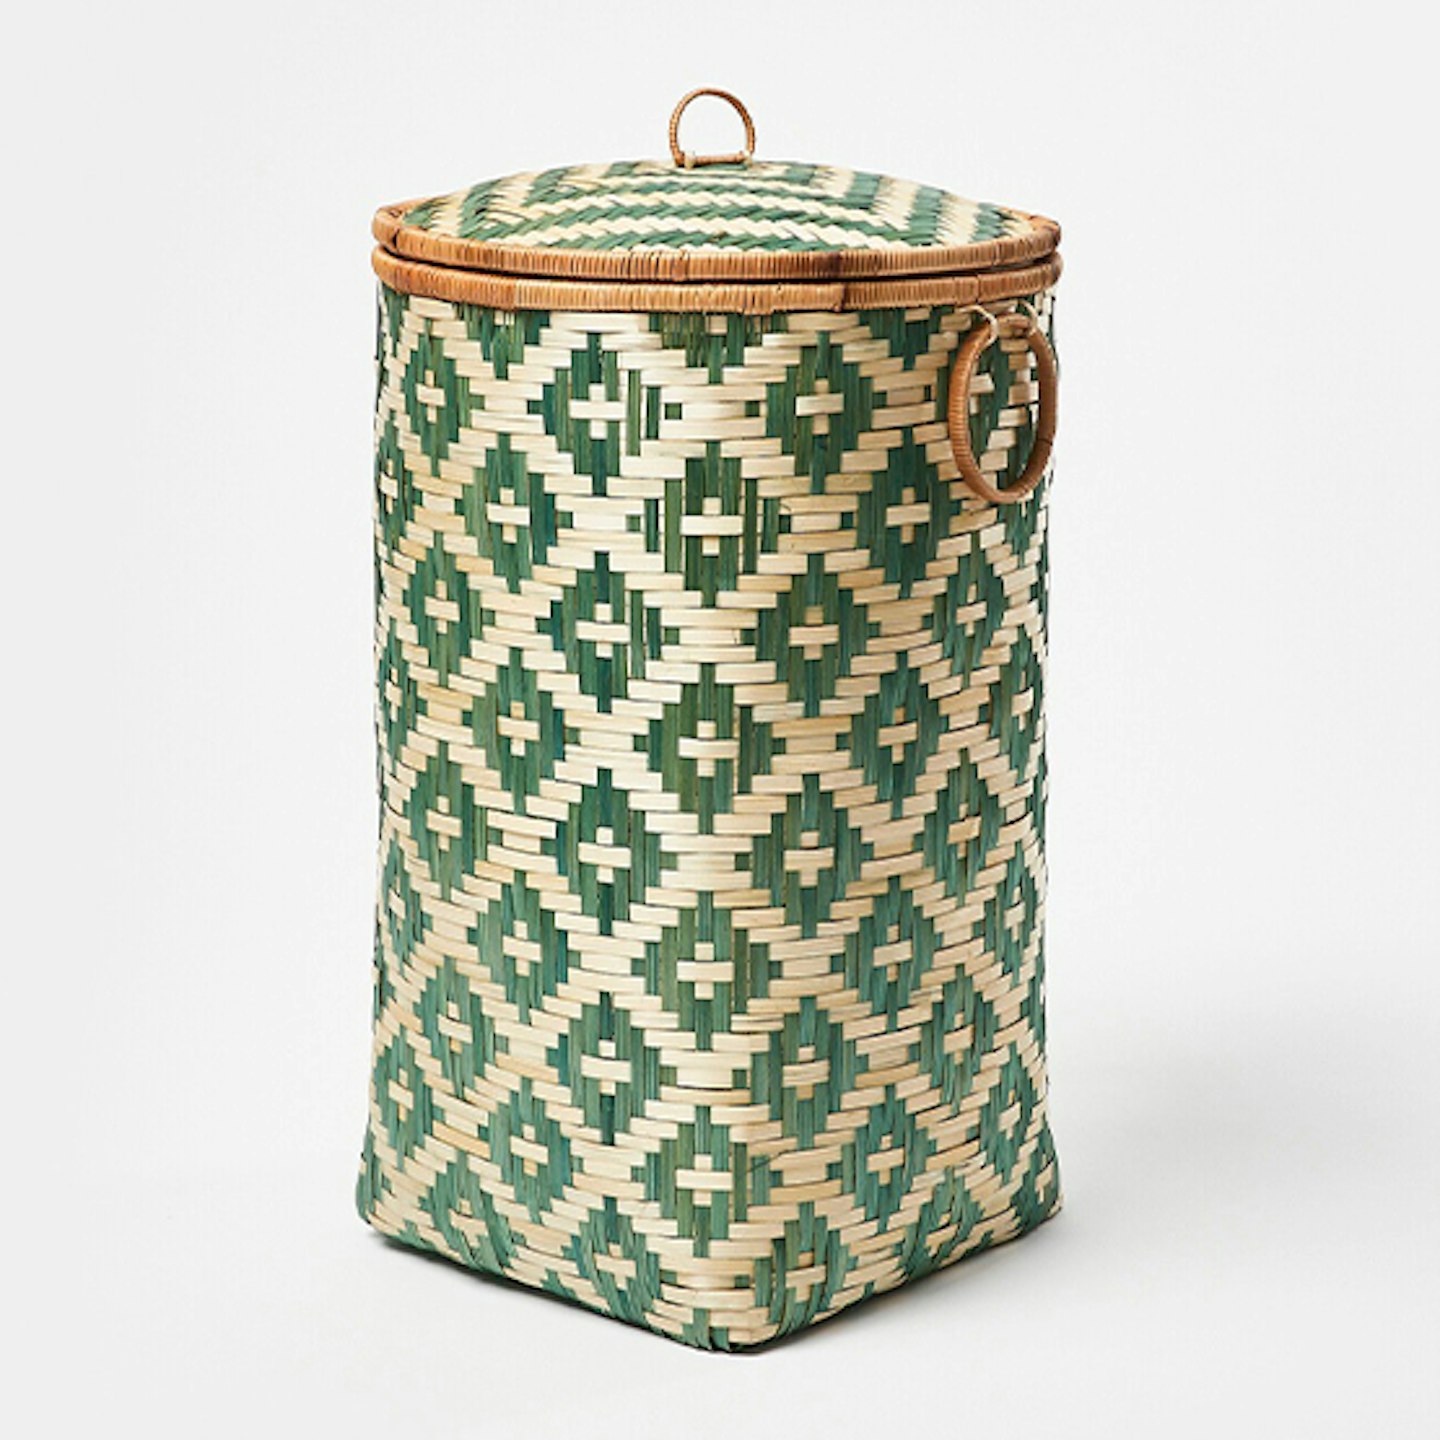 Aztec design laundry basket